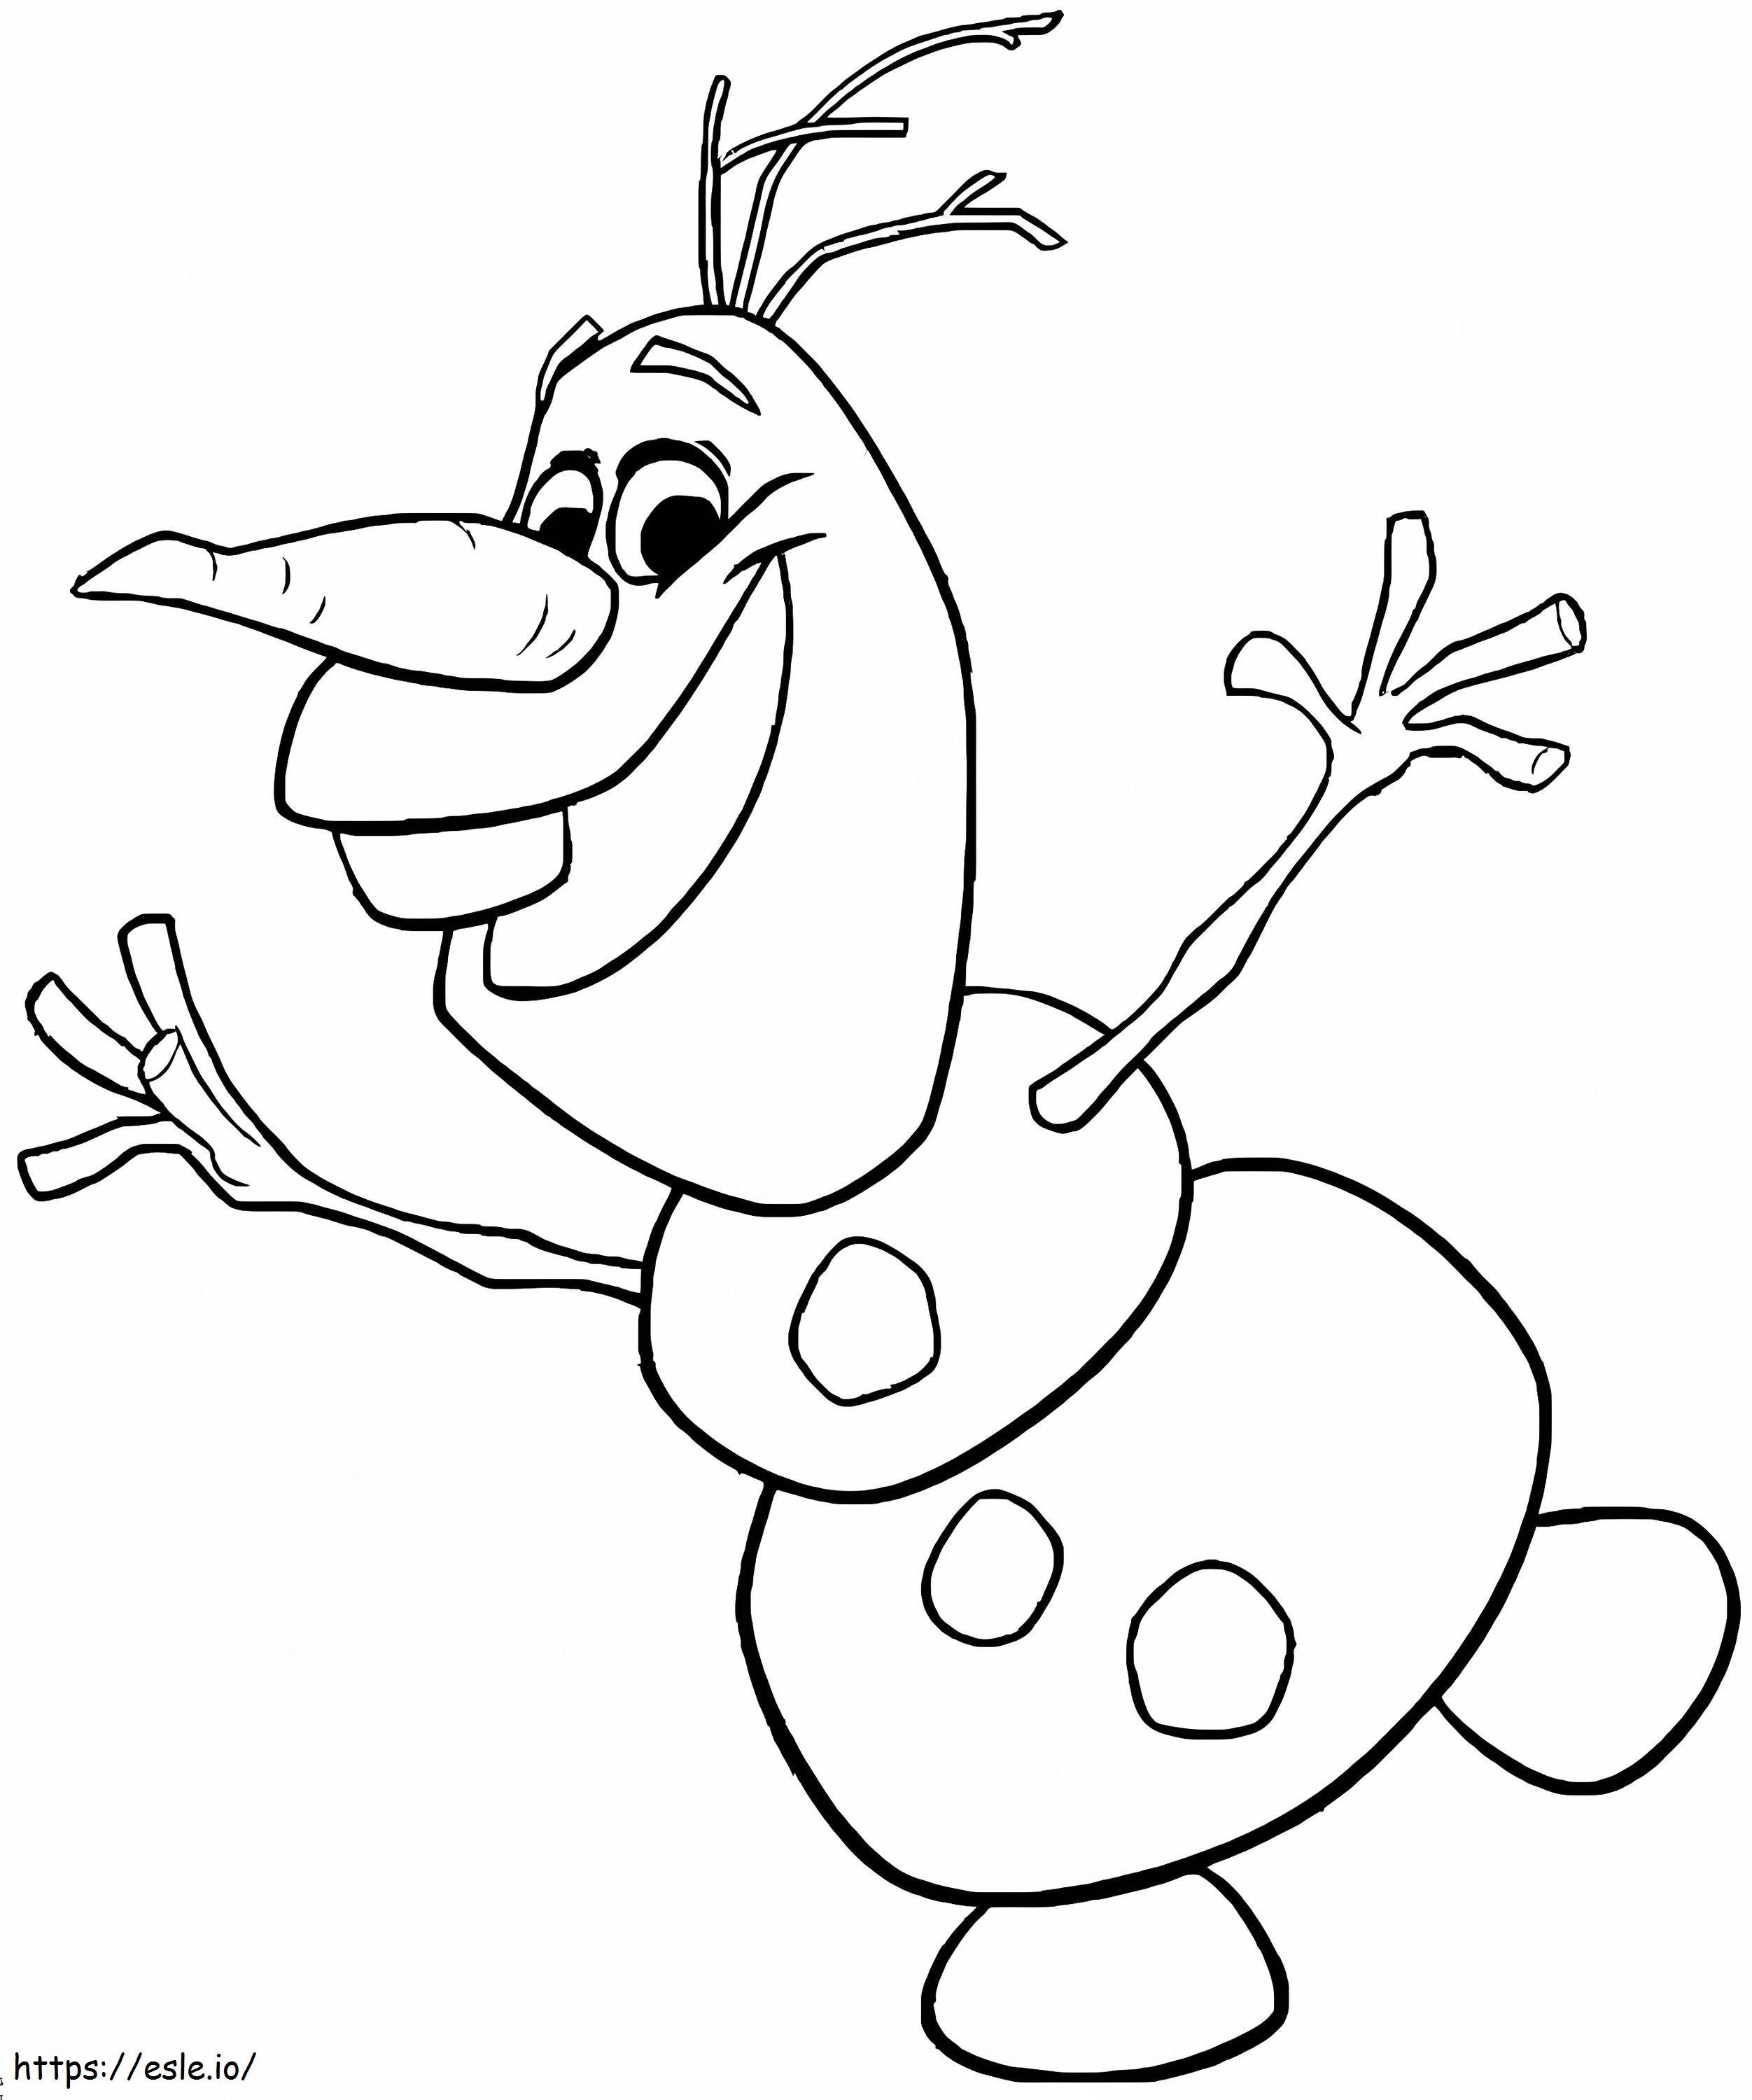 Mutlu Olaf boyama